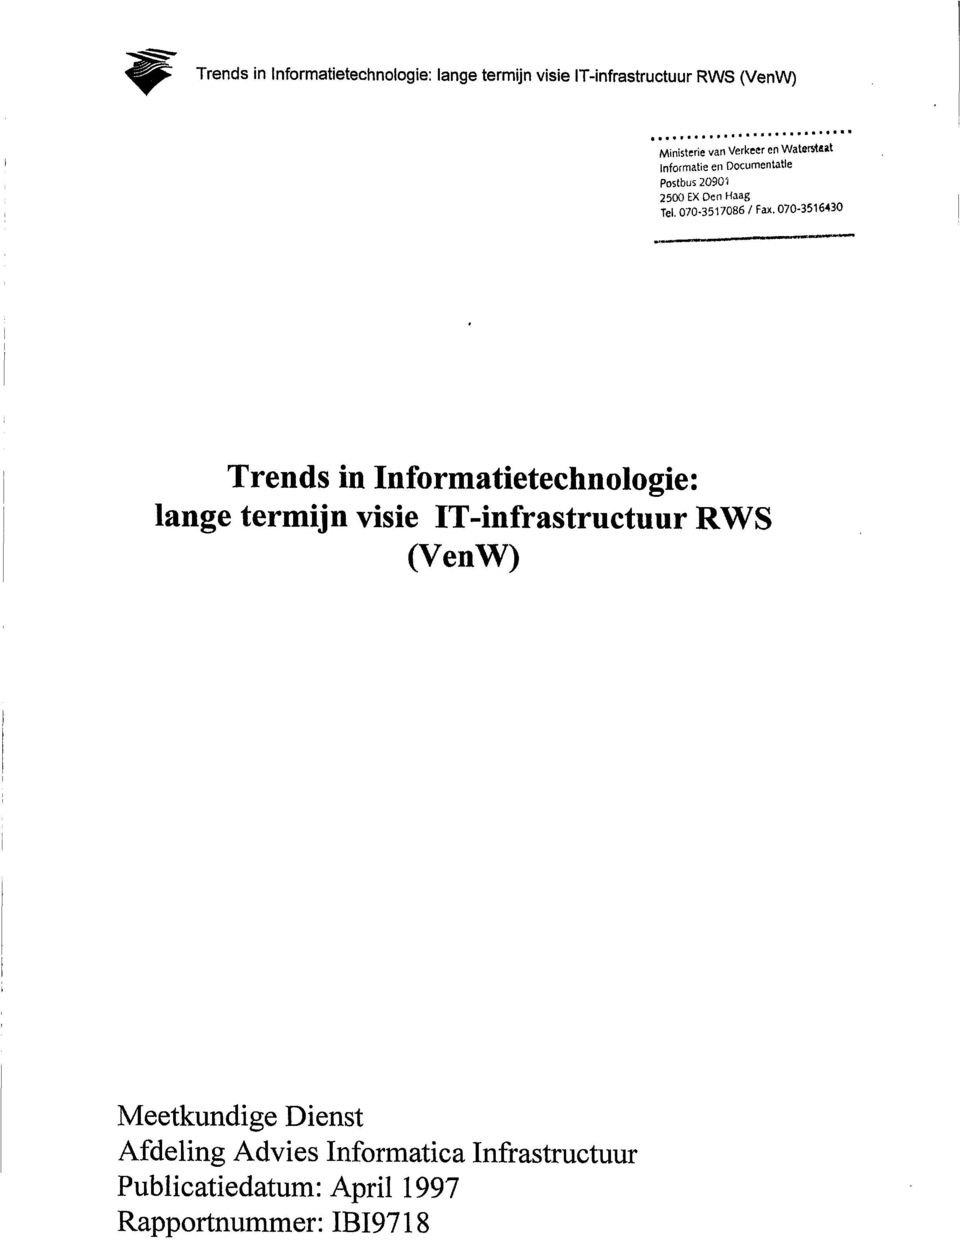 070-3516430 - Trends in Informatietechnologie: lange termijn visie IT-infrastructuur RWS (VenW)